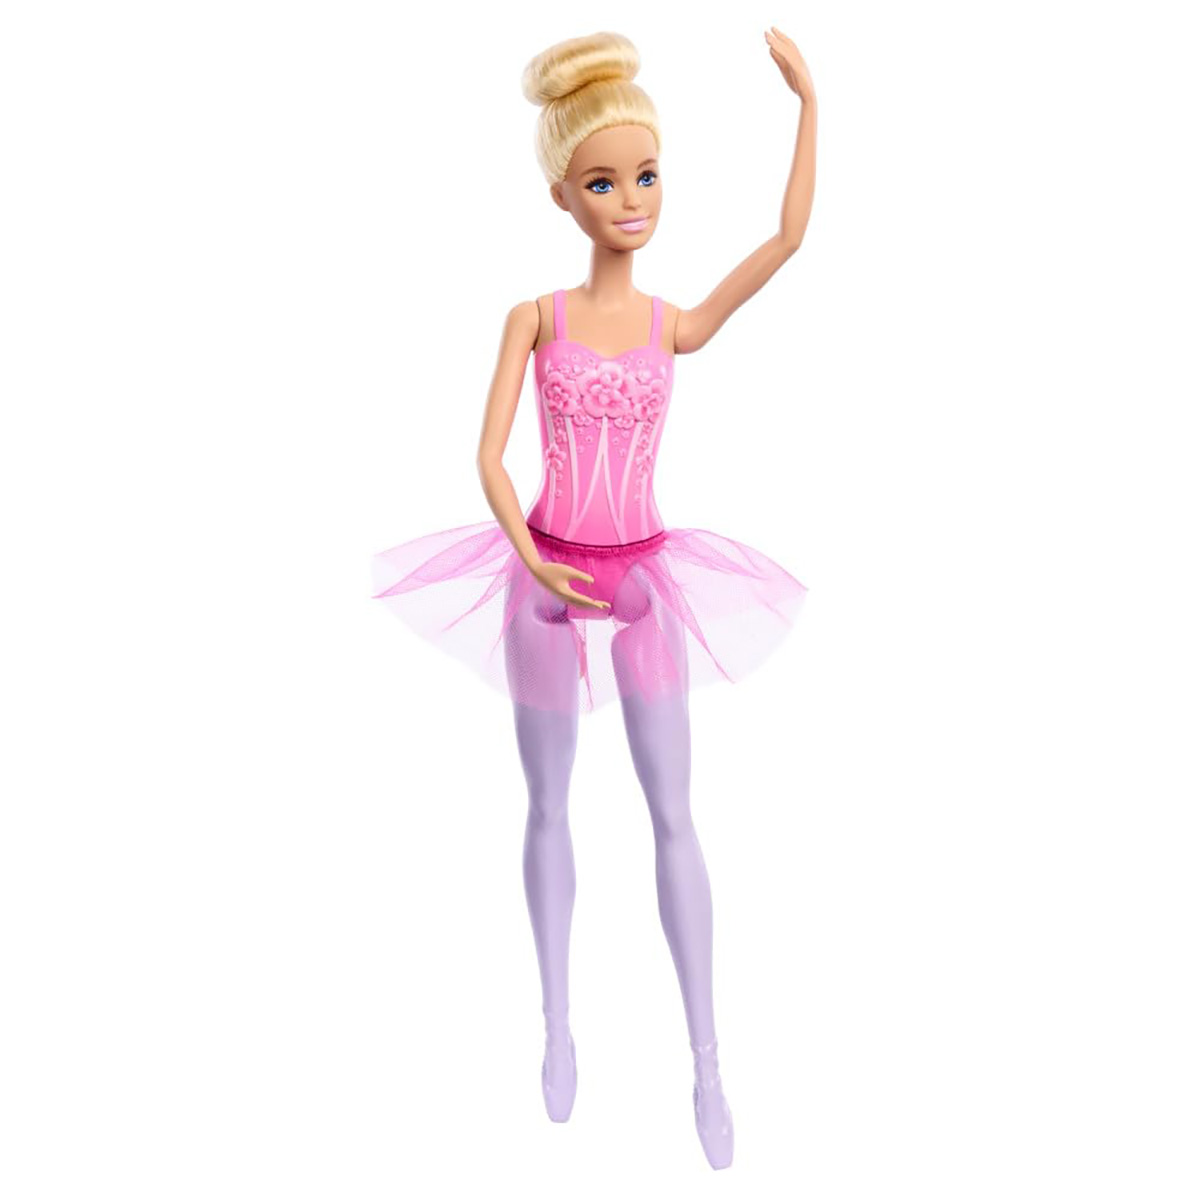 Papusa Barbie balerina cu rochita roz, HRG34